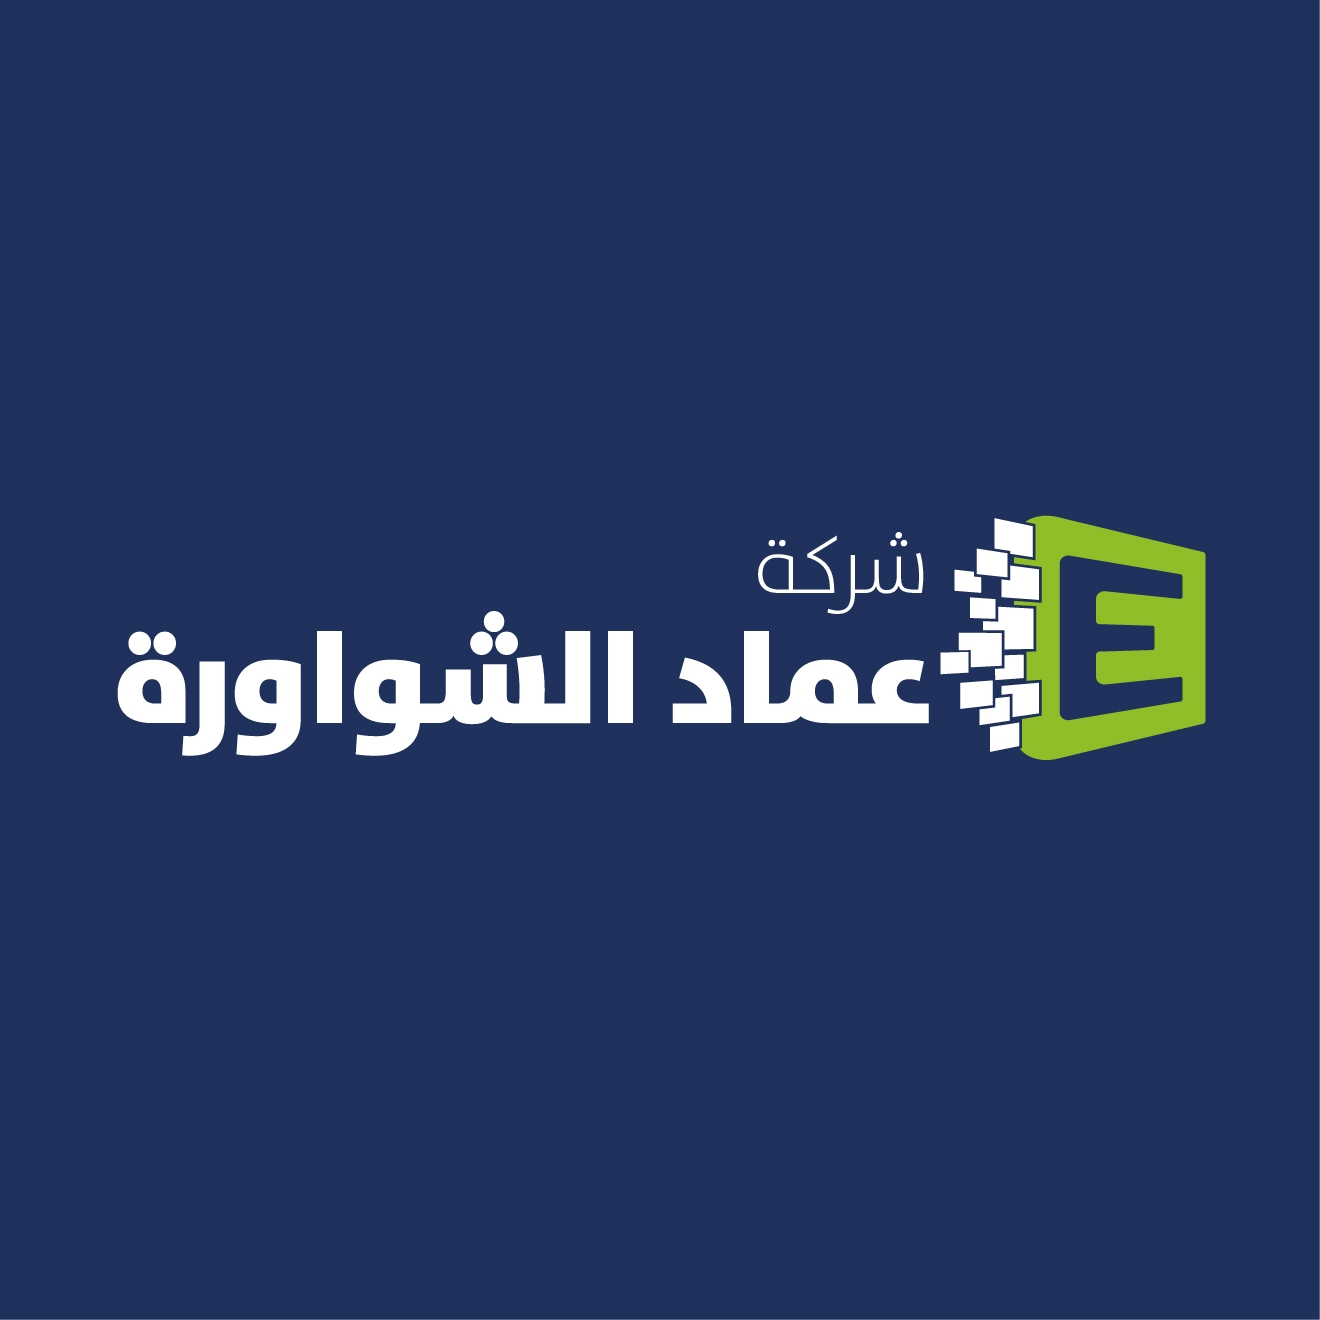 Emad aldin alshawawreh and partner company  